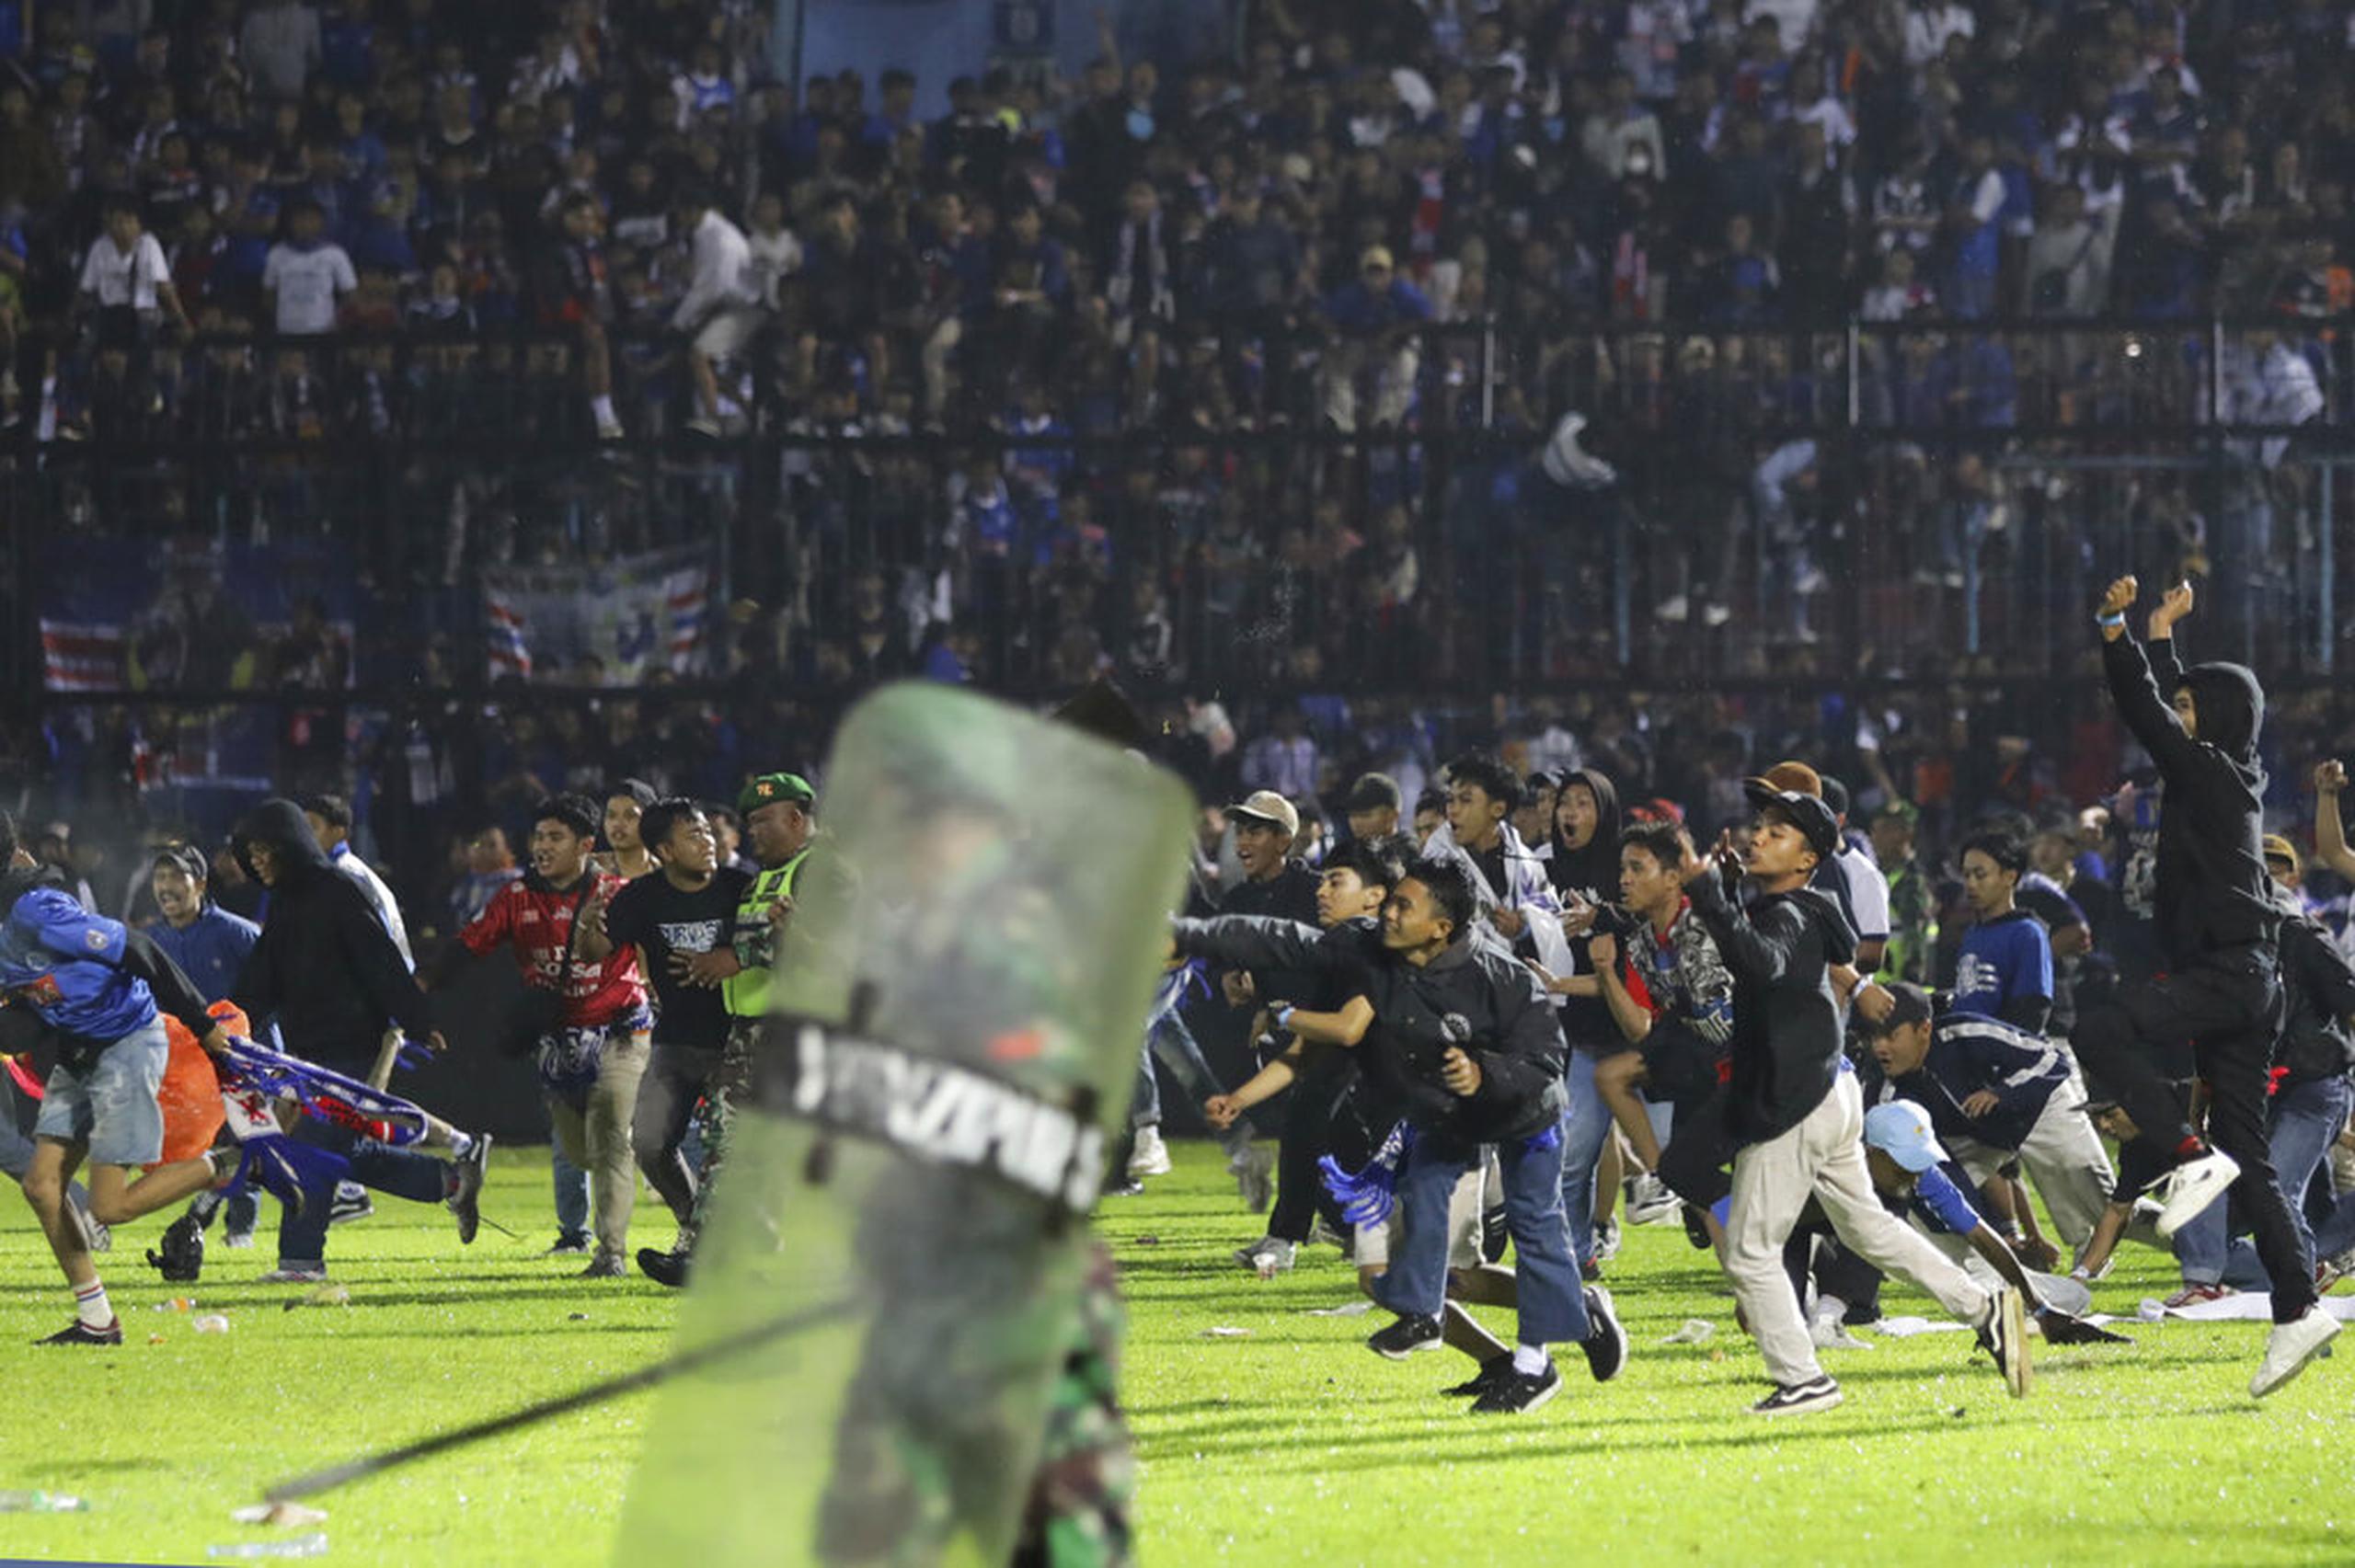 El pasado 1 de octubre, aficionados invaden el estadio durante un enfrentamiento entre seguidores en el Estadio Kanjuruhan en Malang, East Java, Indonesia.